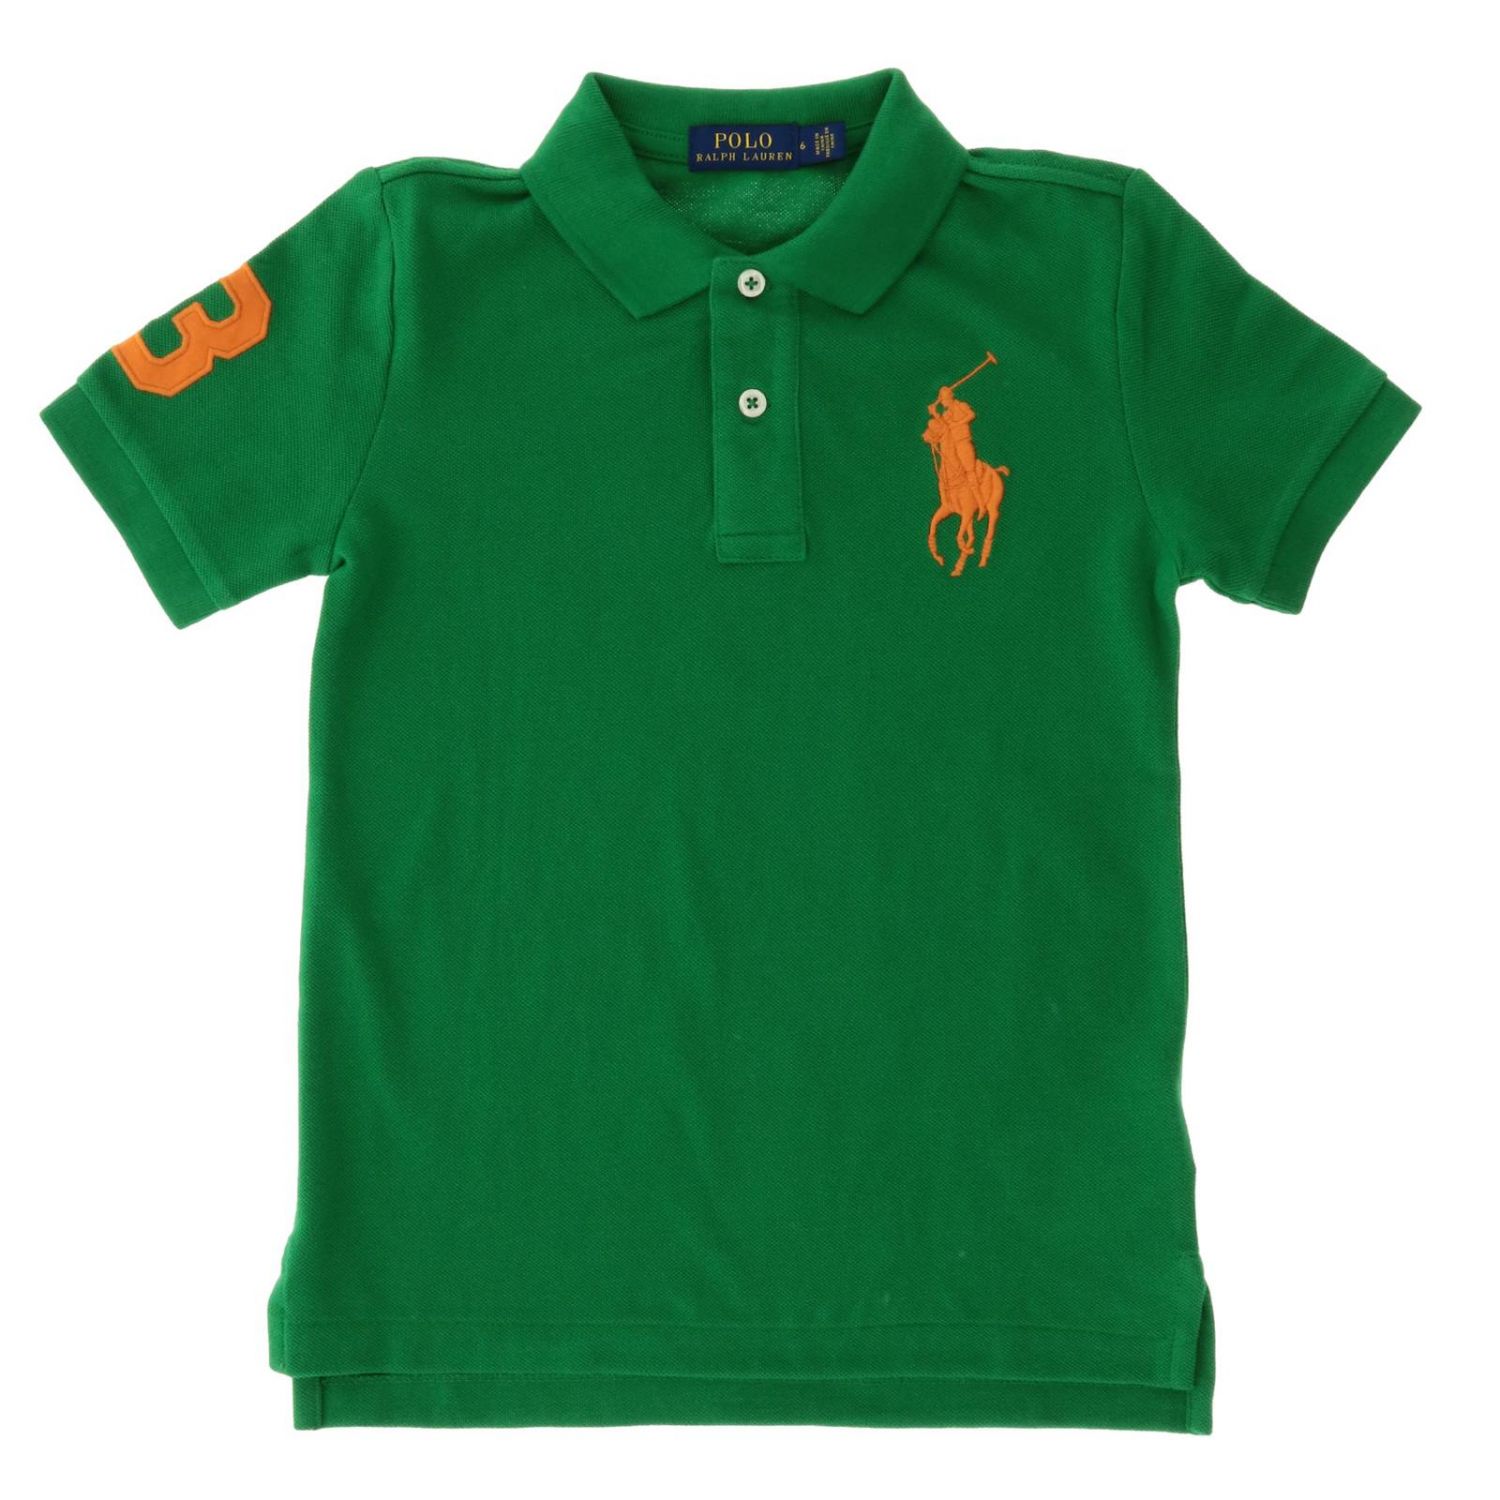 Polo Ralph Lauren Kid Outlet: T-shirt kids - Green | T-Shirt Polo Ralph ...